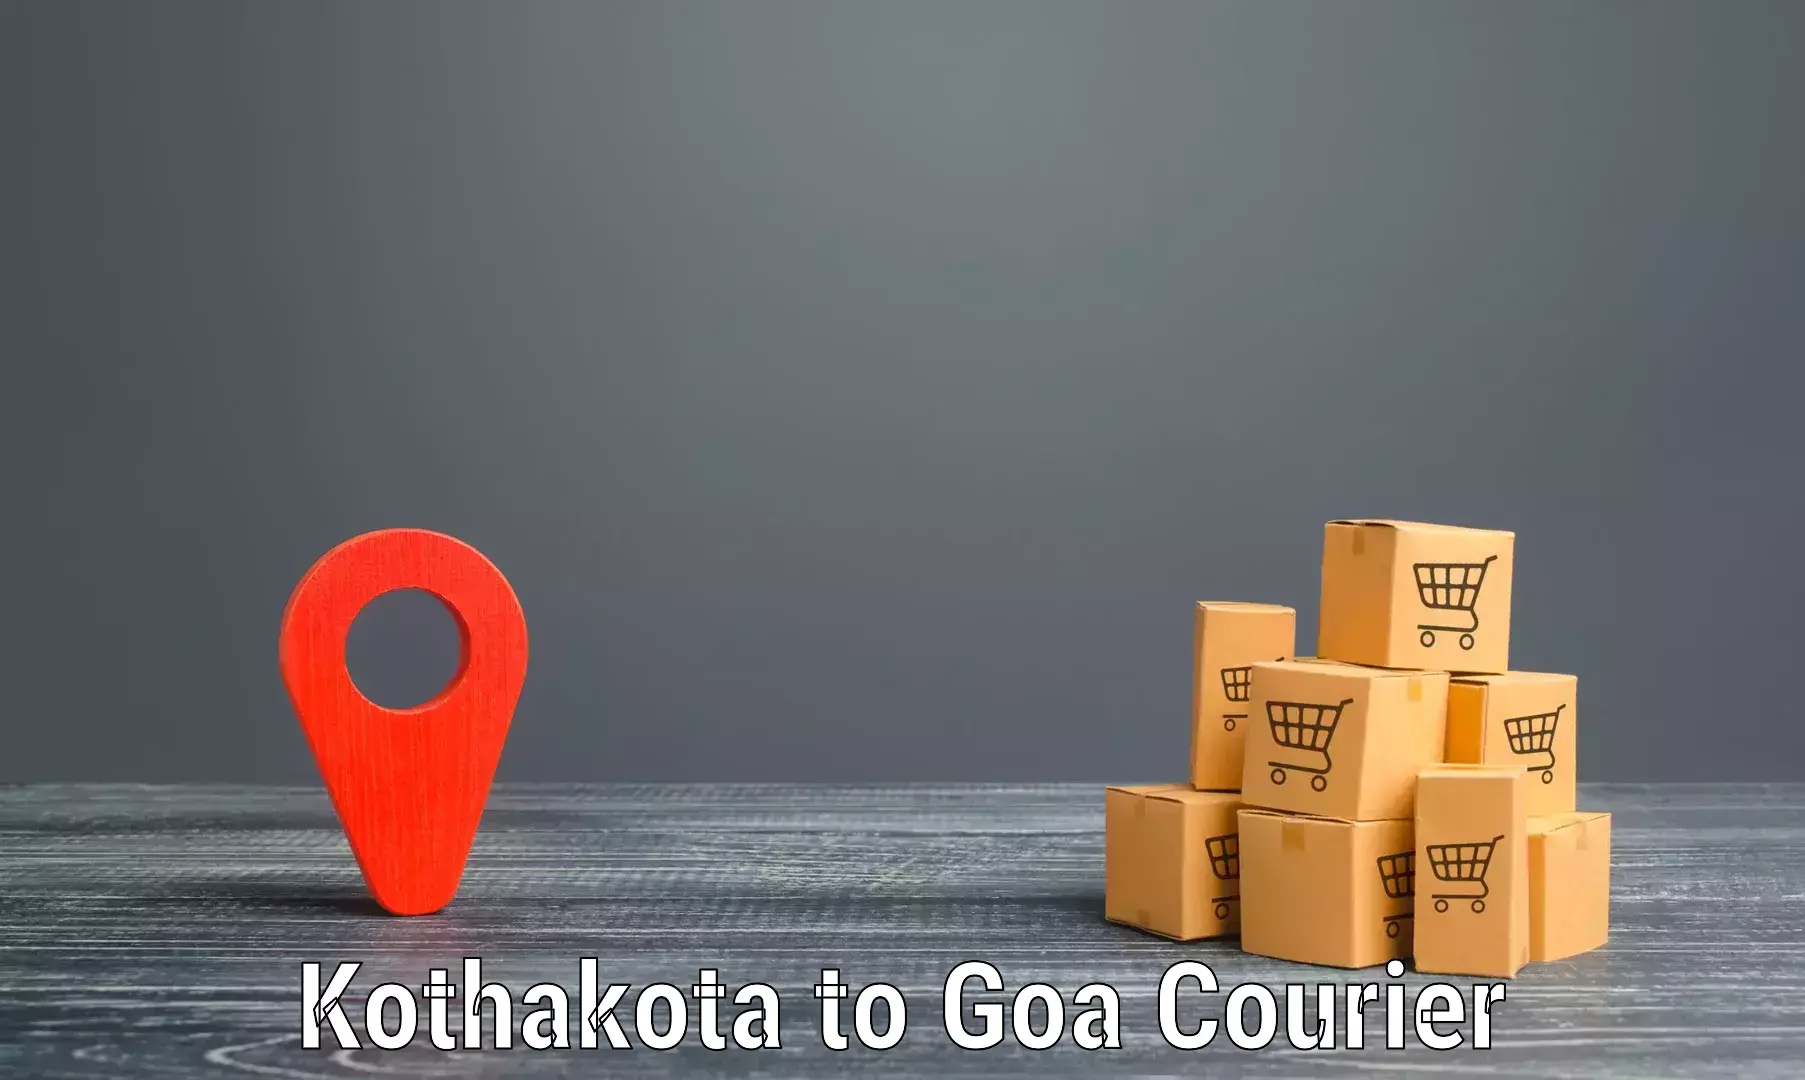 Large package courier Kothakota to Vasco da Gama